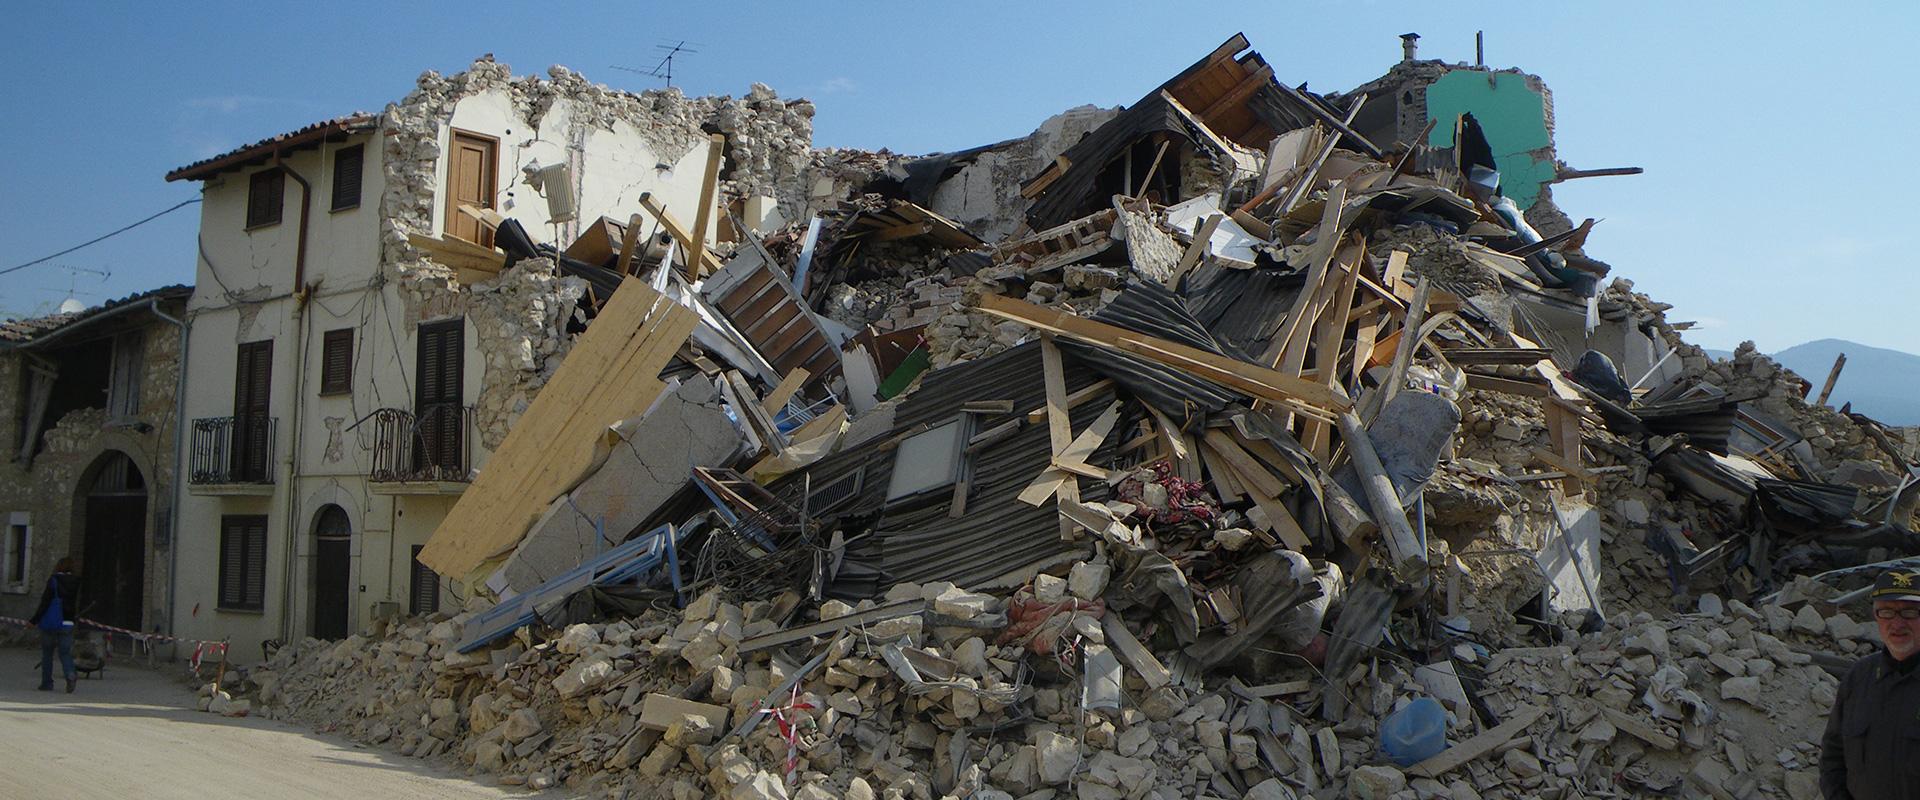 Effondrement de maisons suite au séisme des Abruzzes, Italie